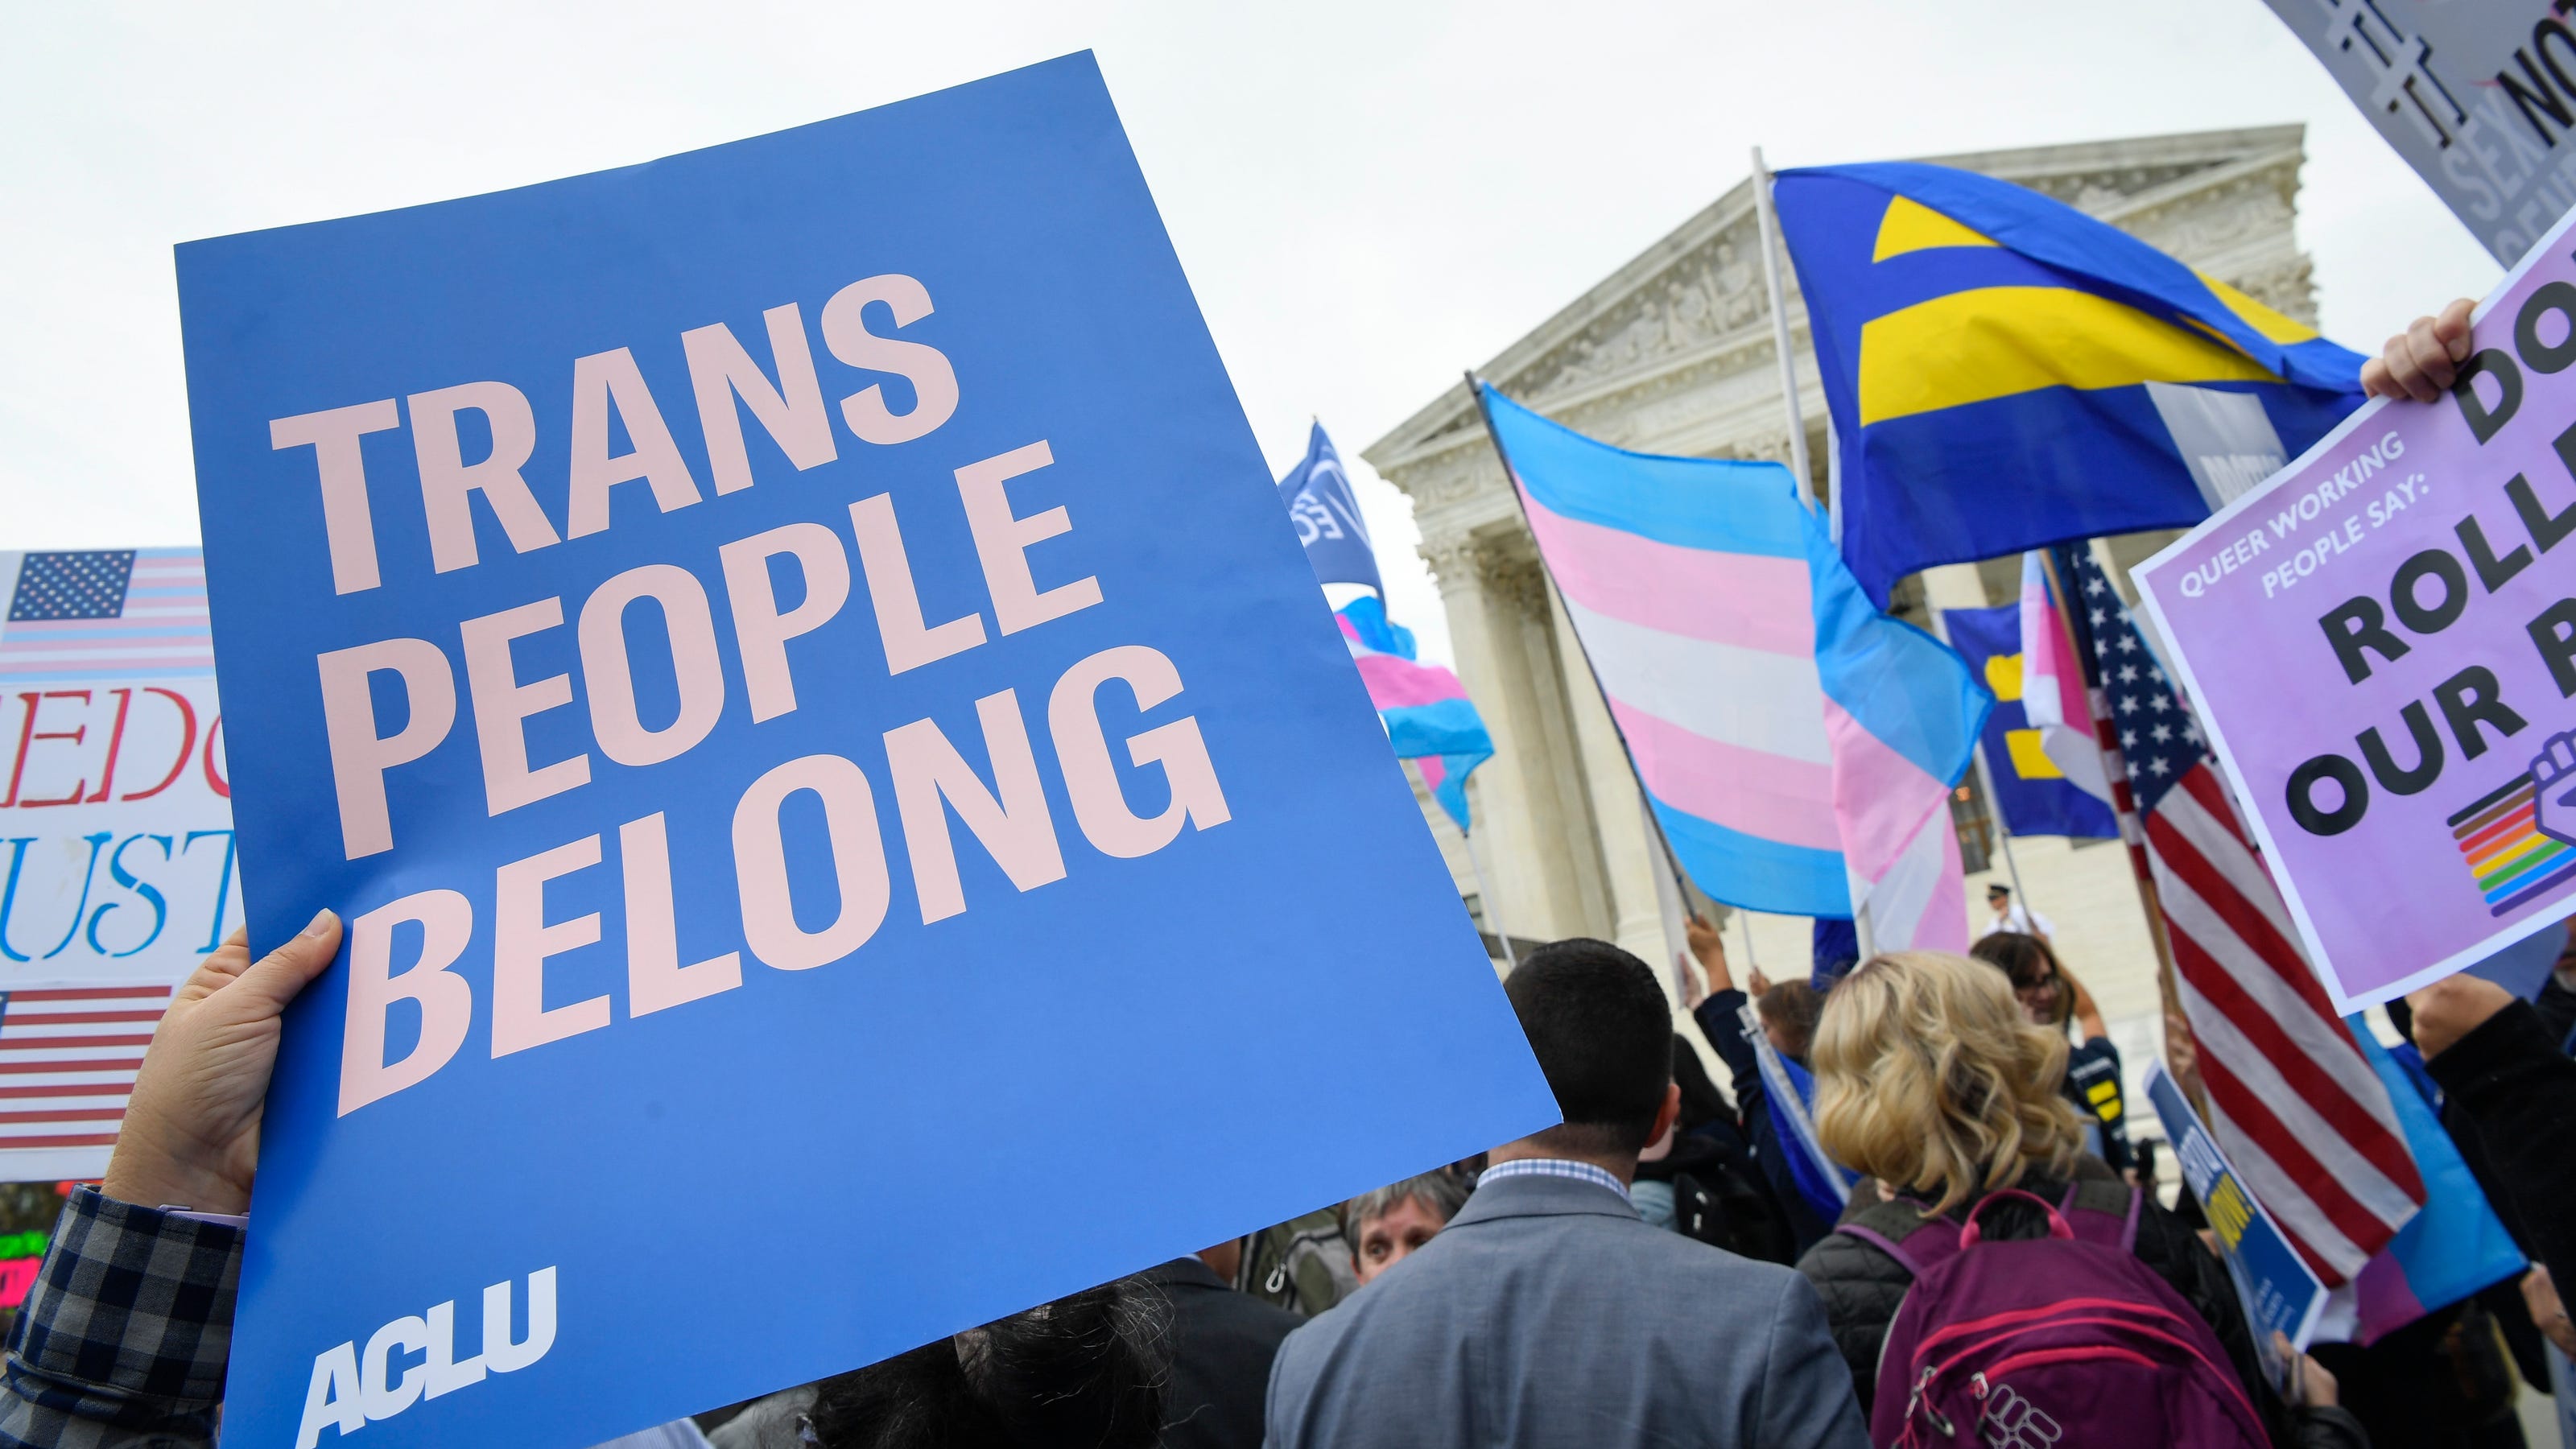 transgender day of remembrance 2021 denver